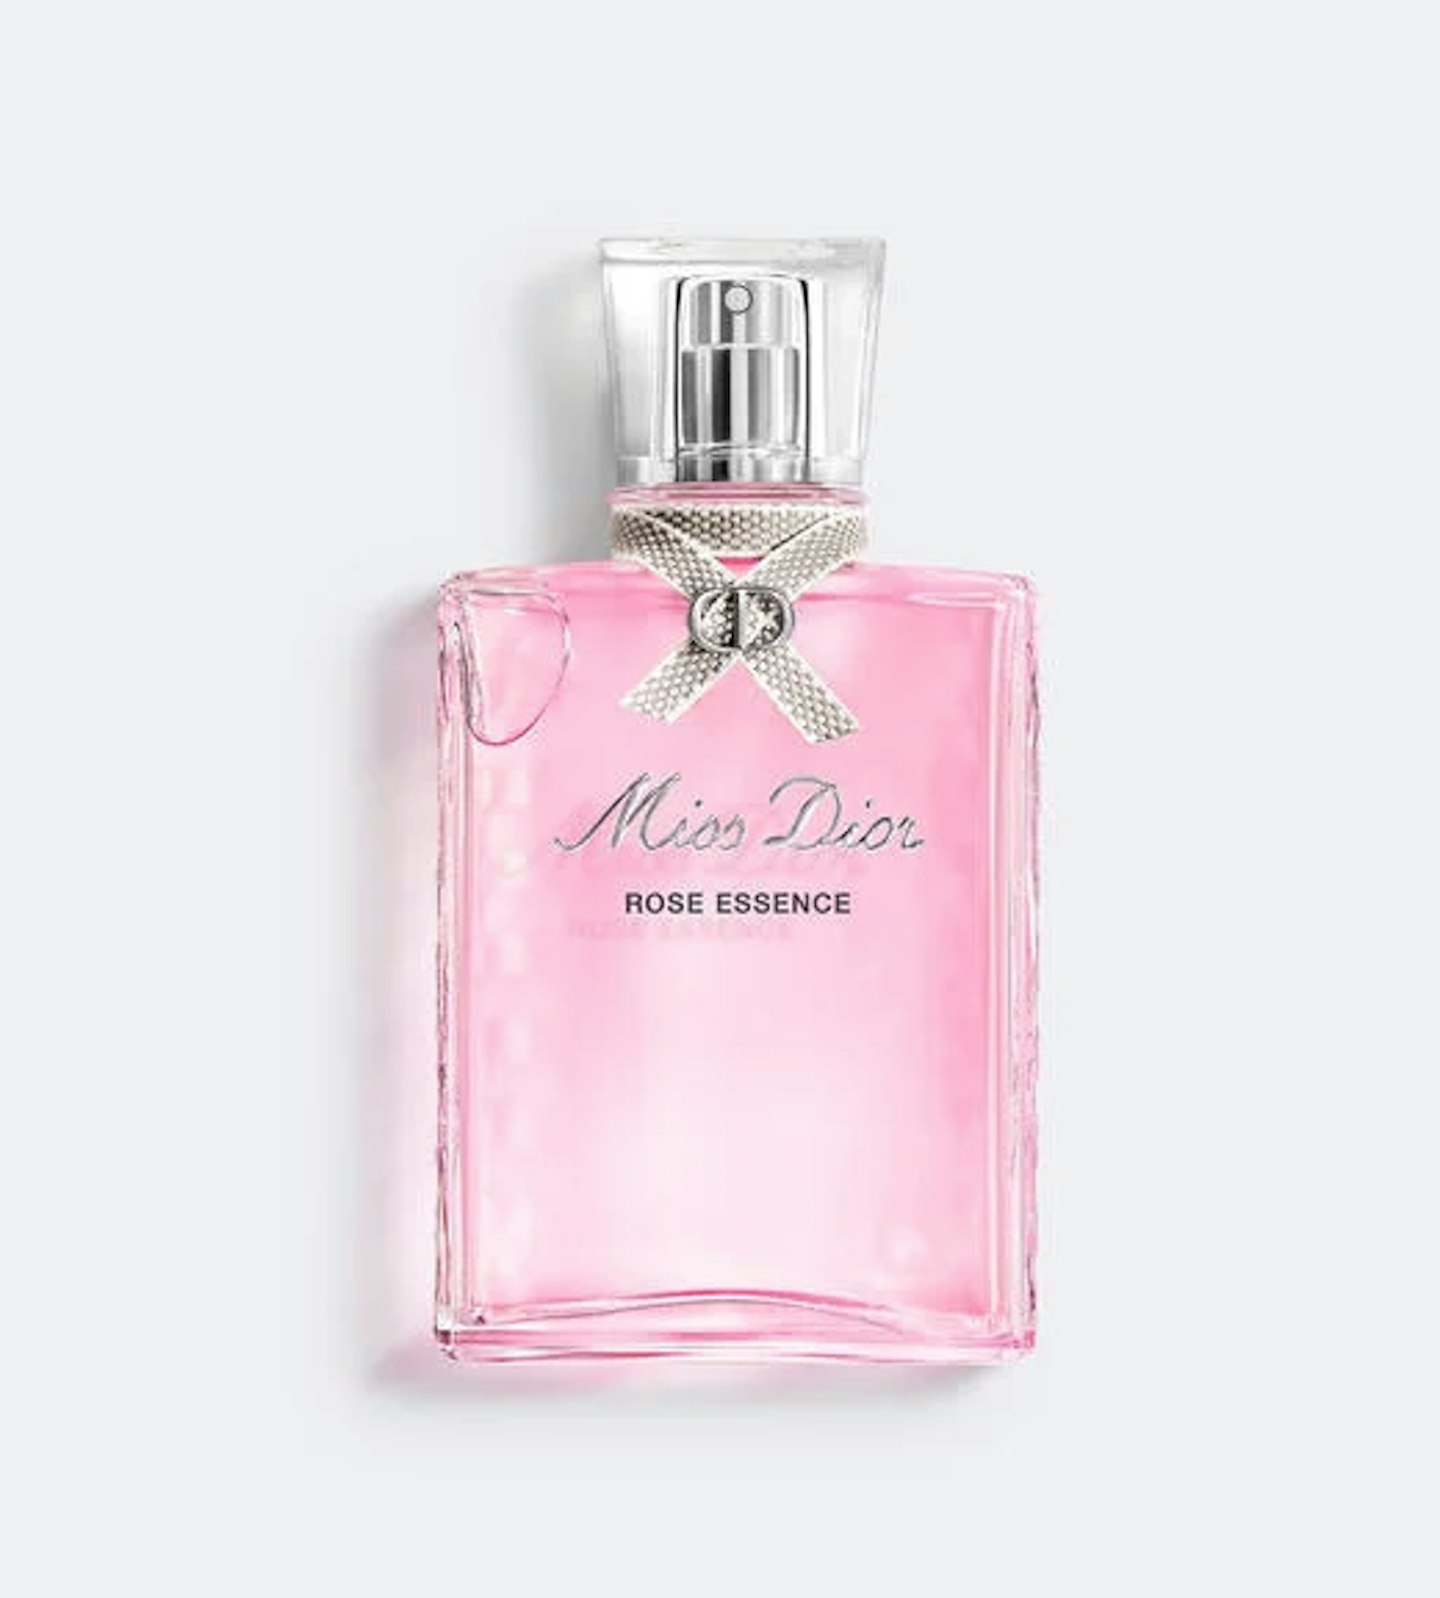 Miss Dior Rose Essence Eau de Toilette